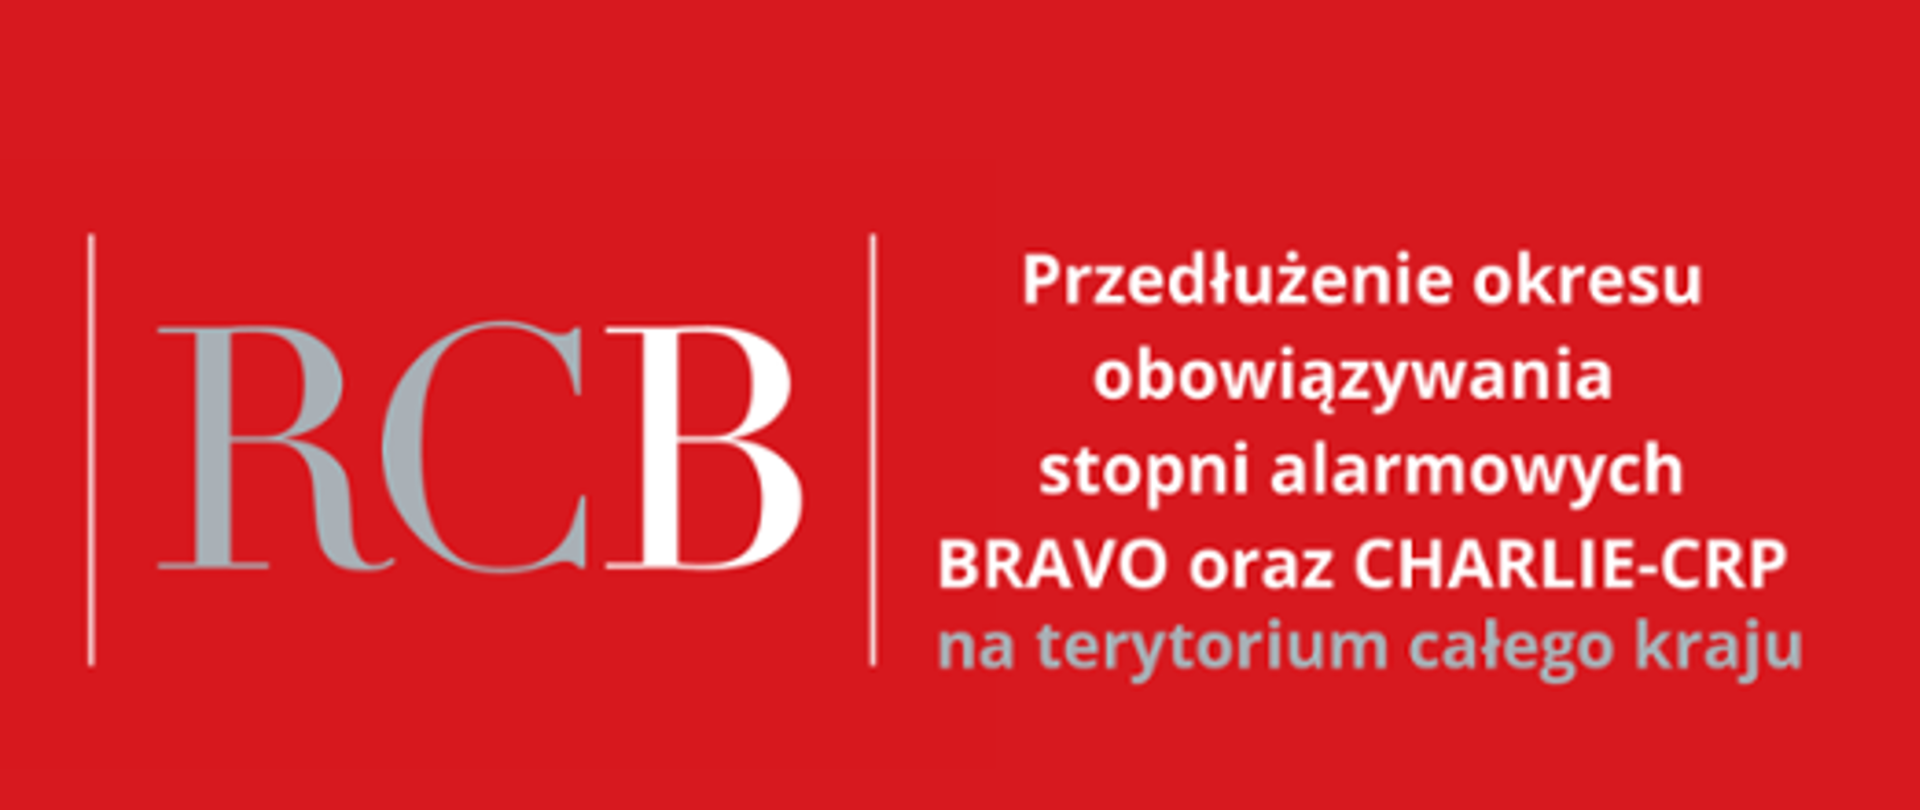 Baner białe litery na czerwonym tle, po lewej stronie duży litery RCB, po prawej oddzielony pionową kreską tekst Przedłużenie okresu obowiązywania stopni alarmowych BRAVO oraz CHARLIE_CRP na terytorium całego kraju